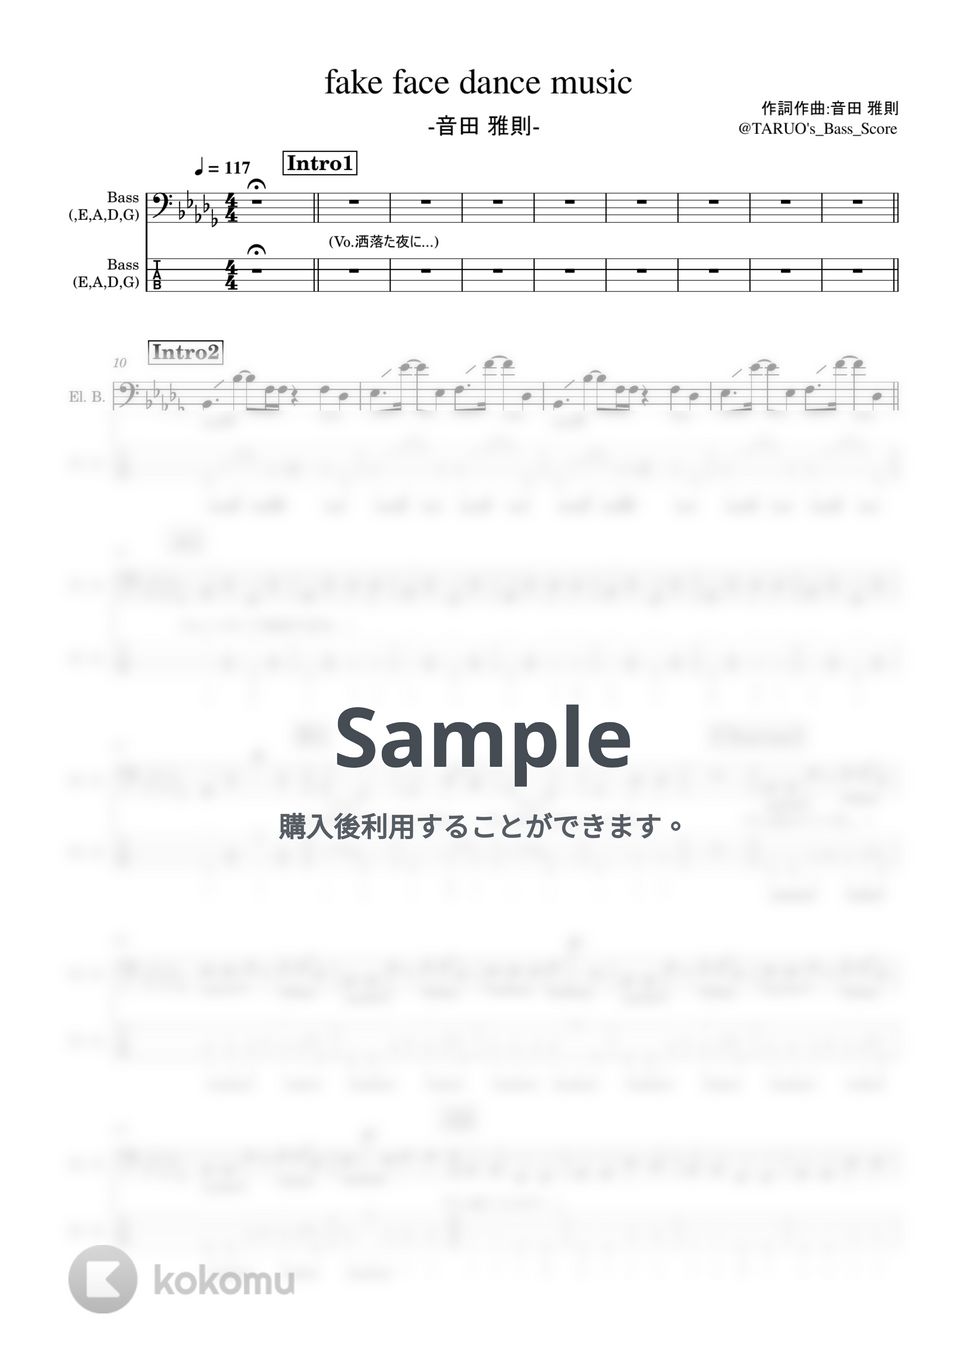 音田雅則 - fake face dance music (ベース/音田雅則) by TARUO's_Bass_Score